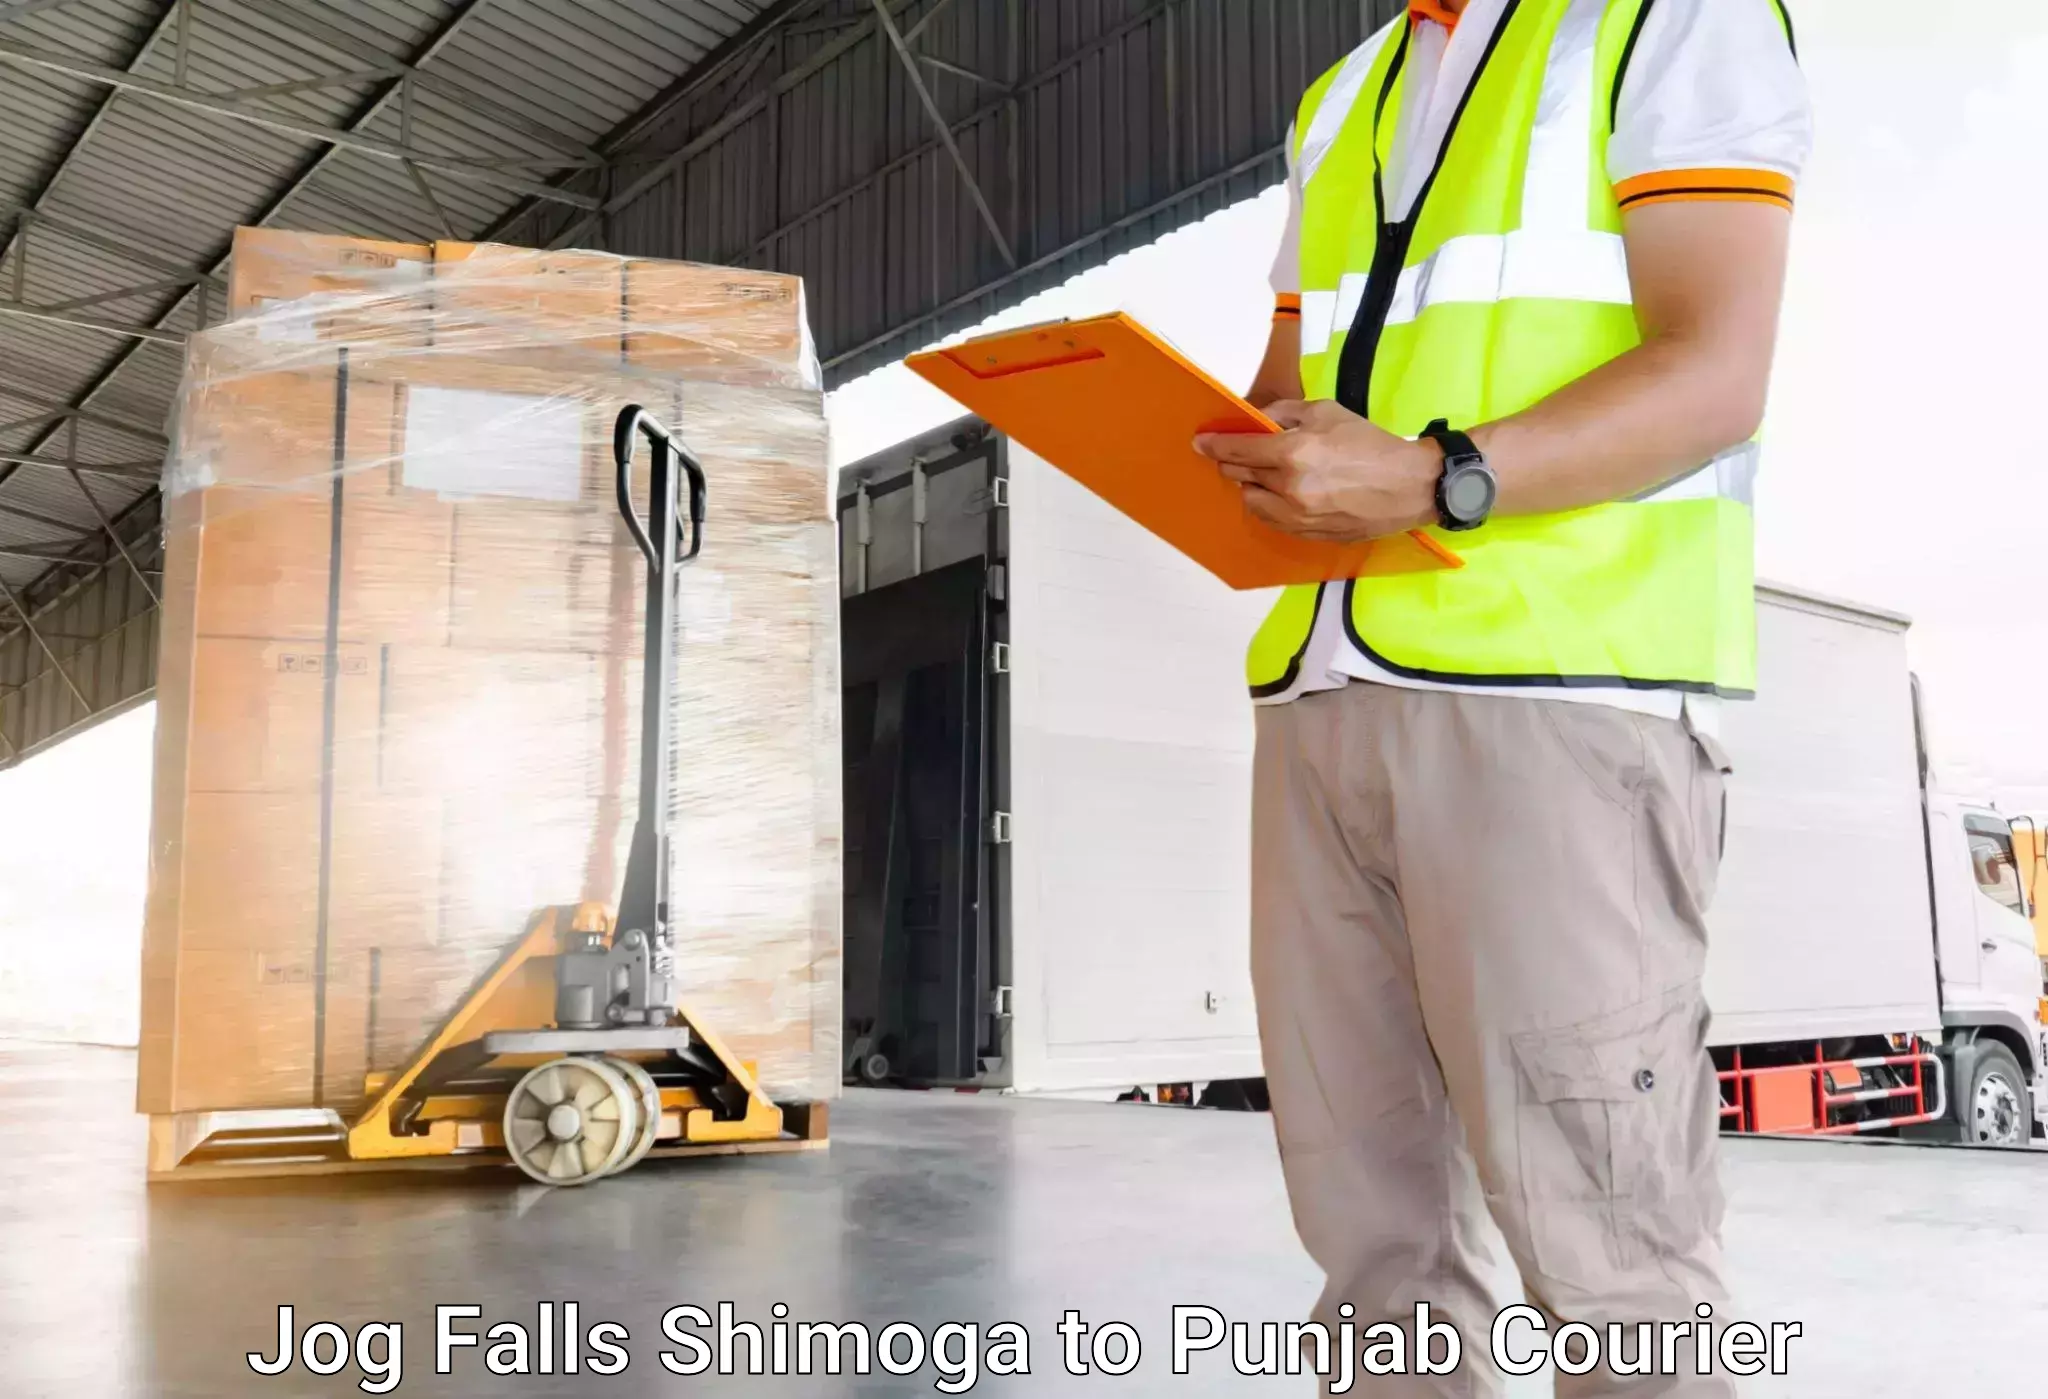 High-quality baggage shipment Jog Falls Shimoga to Punjab